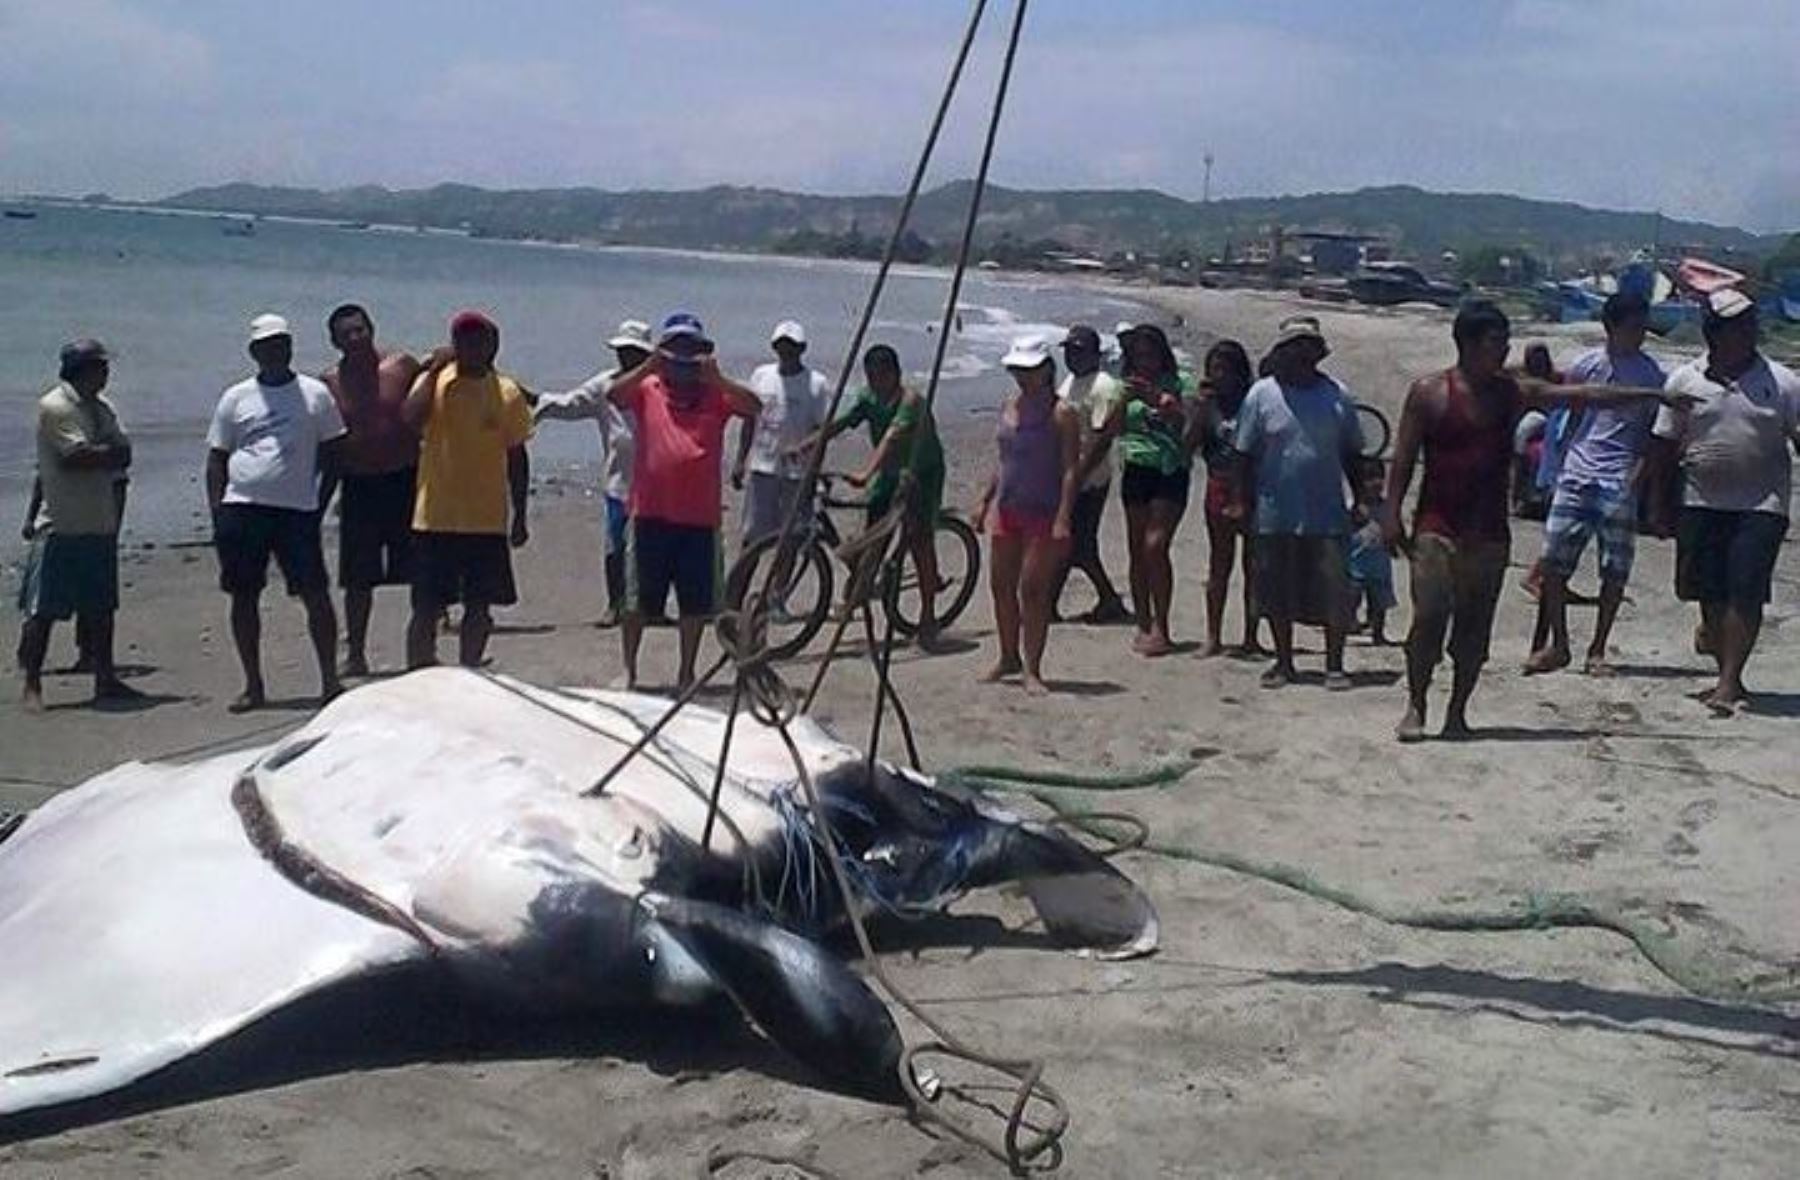 Una mantarraya gigante fue capturada en el mar de Tumbes por pescadores de la zona. Foto: ANDINA.